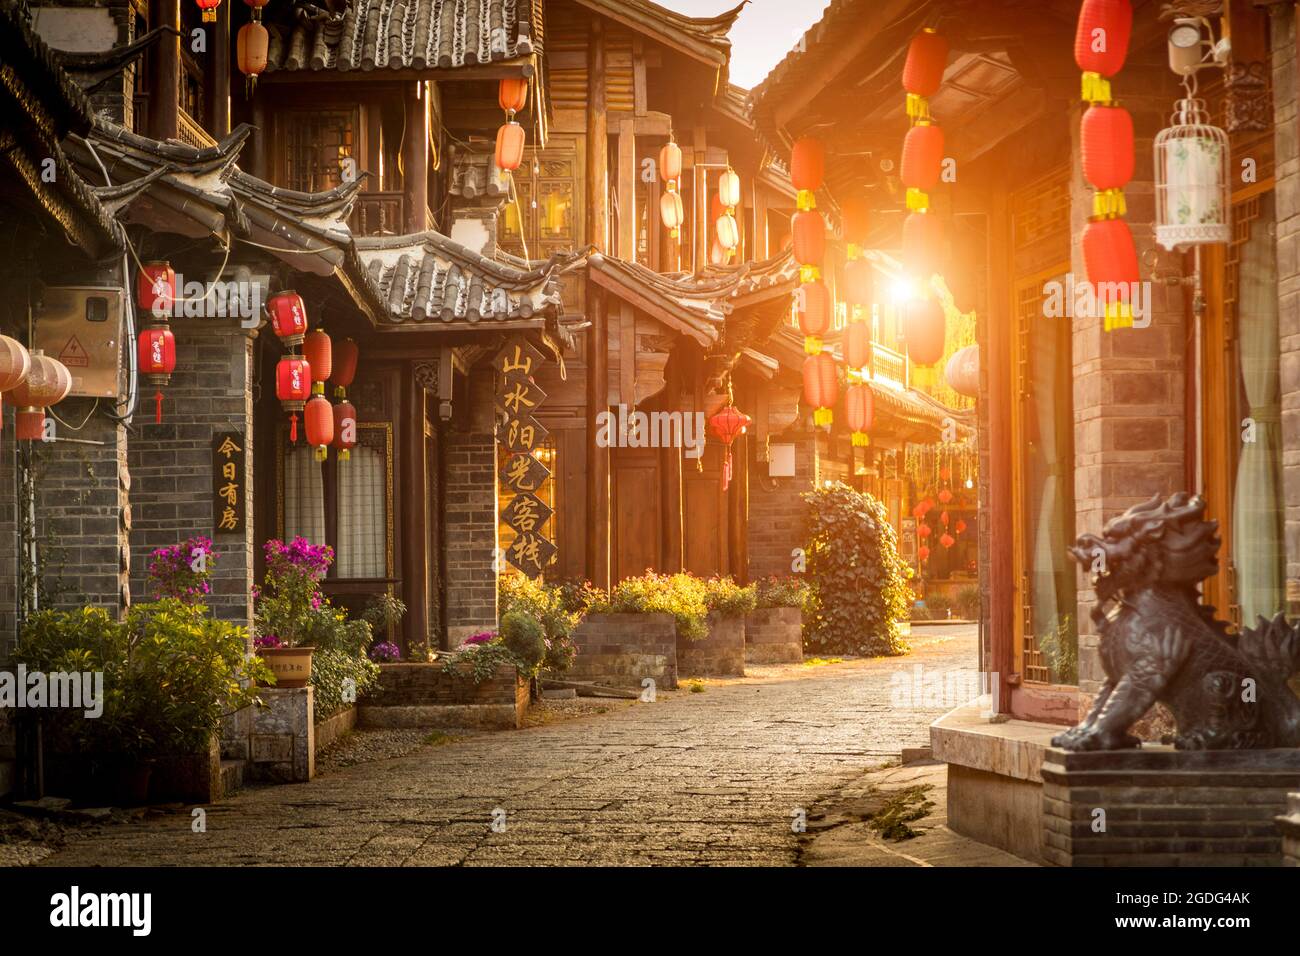 Old town of Lijiang at sunrise, Yunnan, China Stock Photo